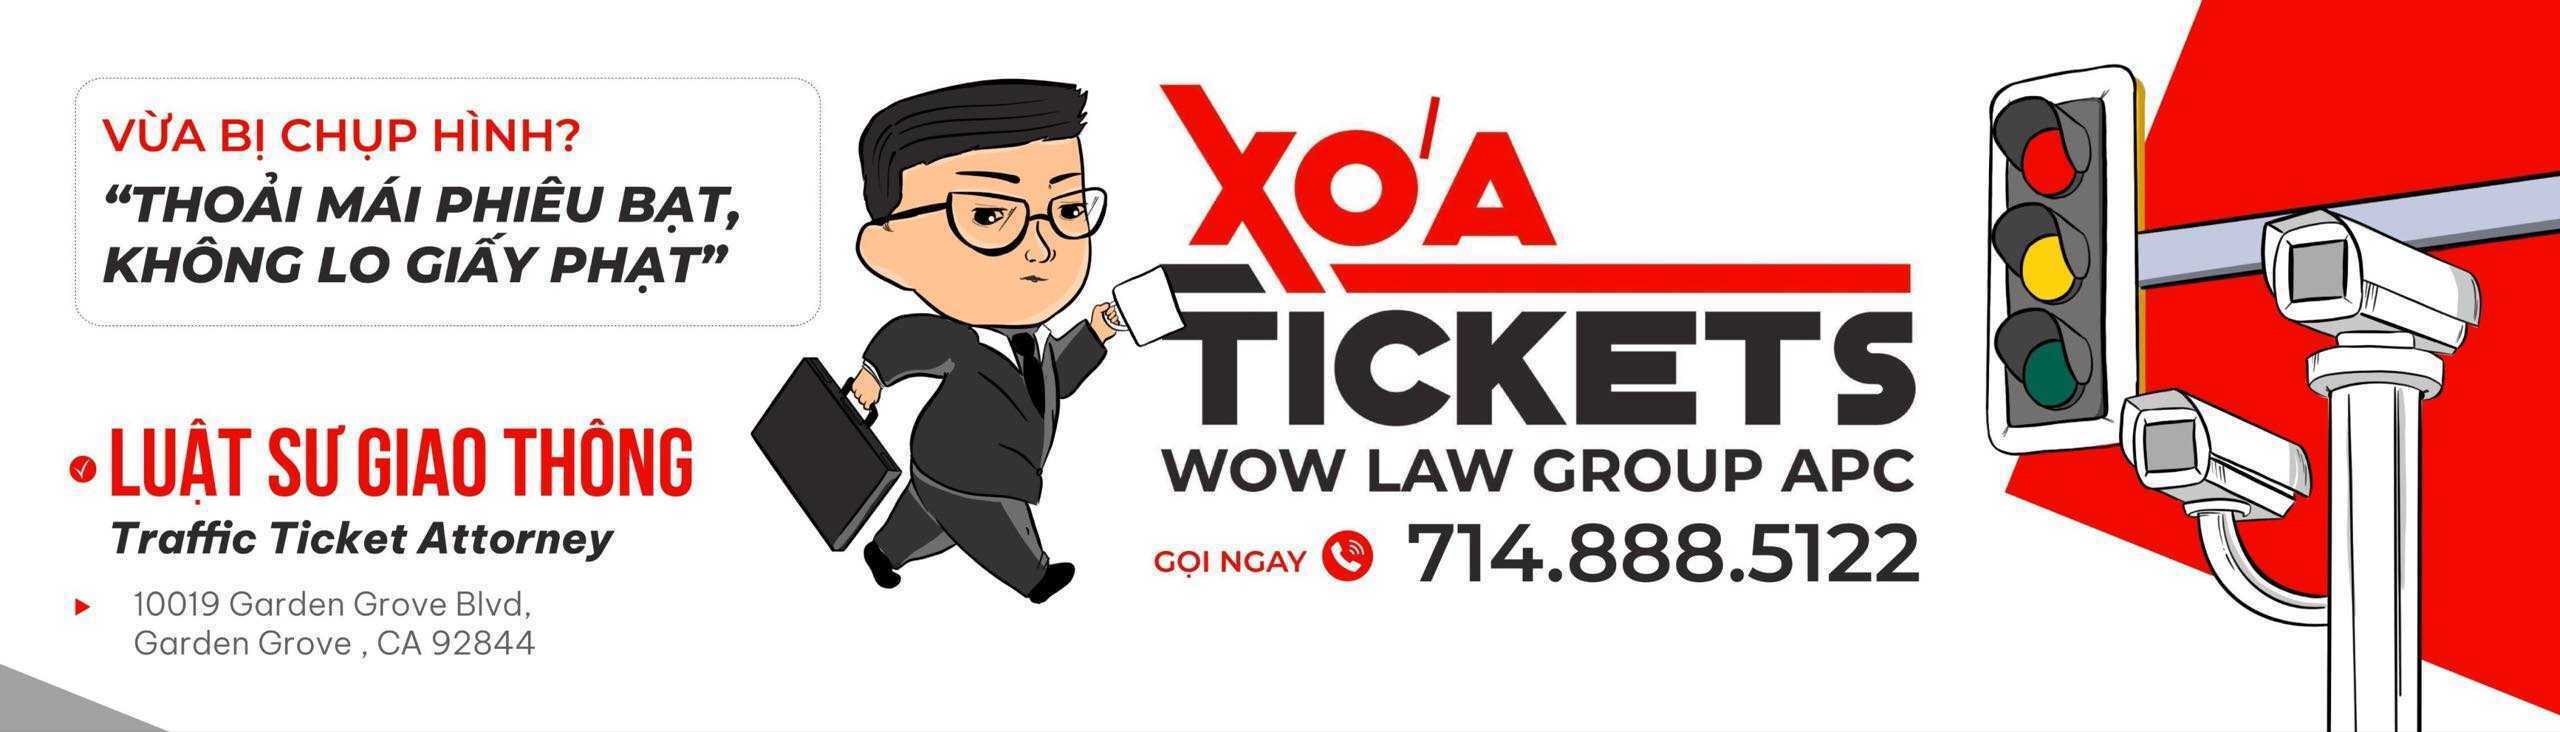 XOÁ TICKETS - Luật Sư giao thông hàng đầu nước Mỹ - WOW LAW Group